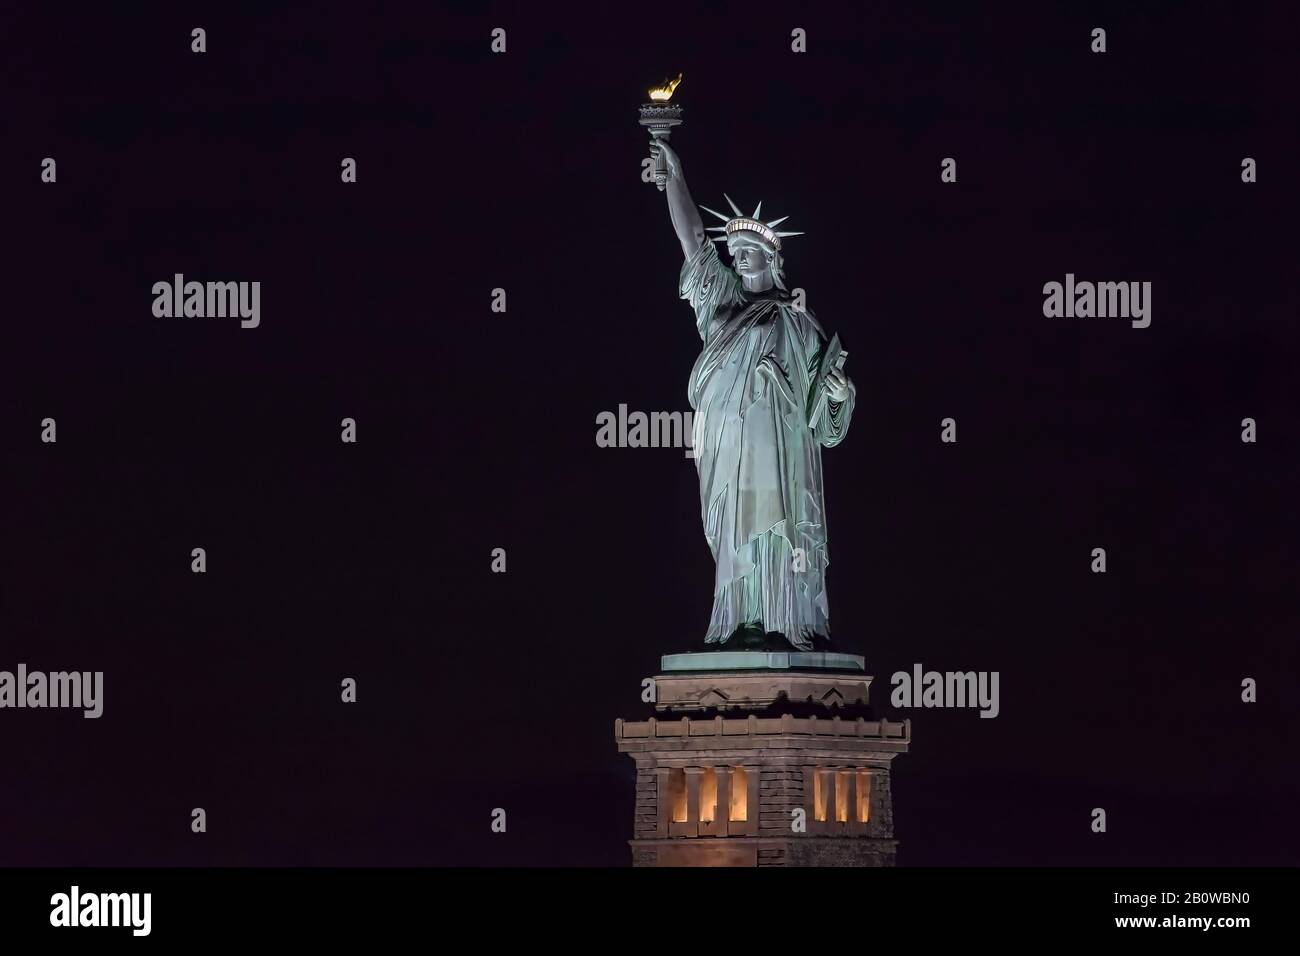 Statue of Liberty NY at night Stock Photo